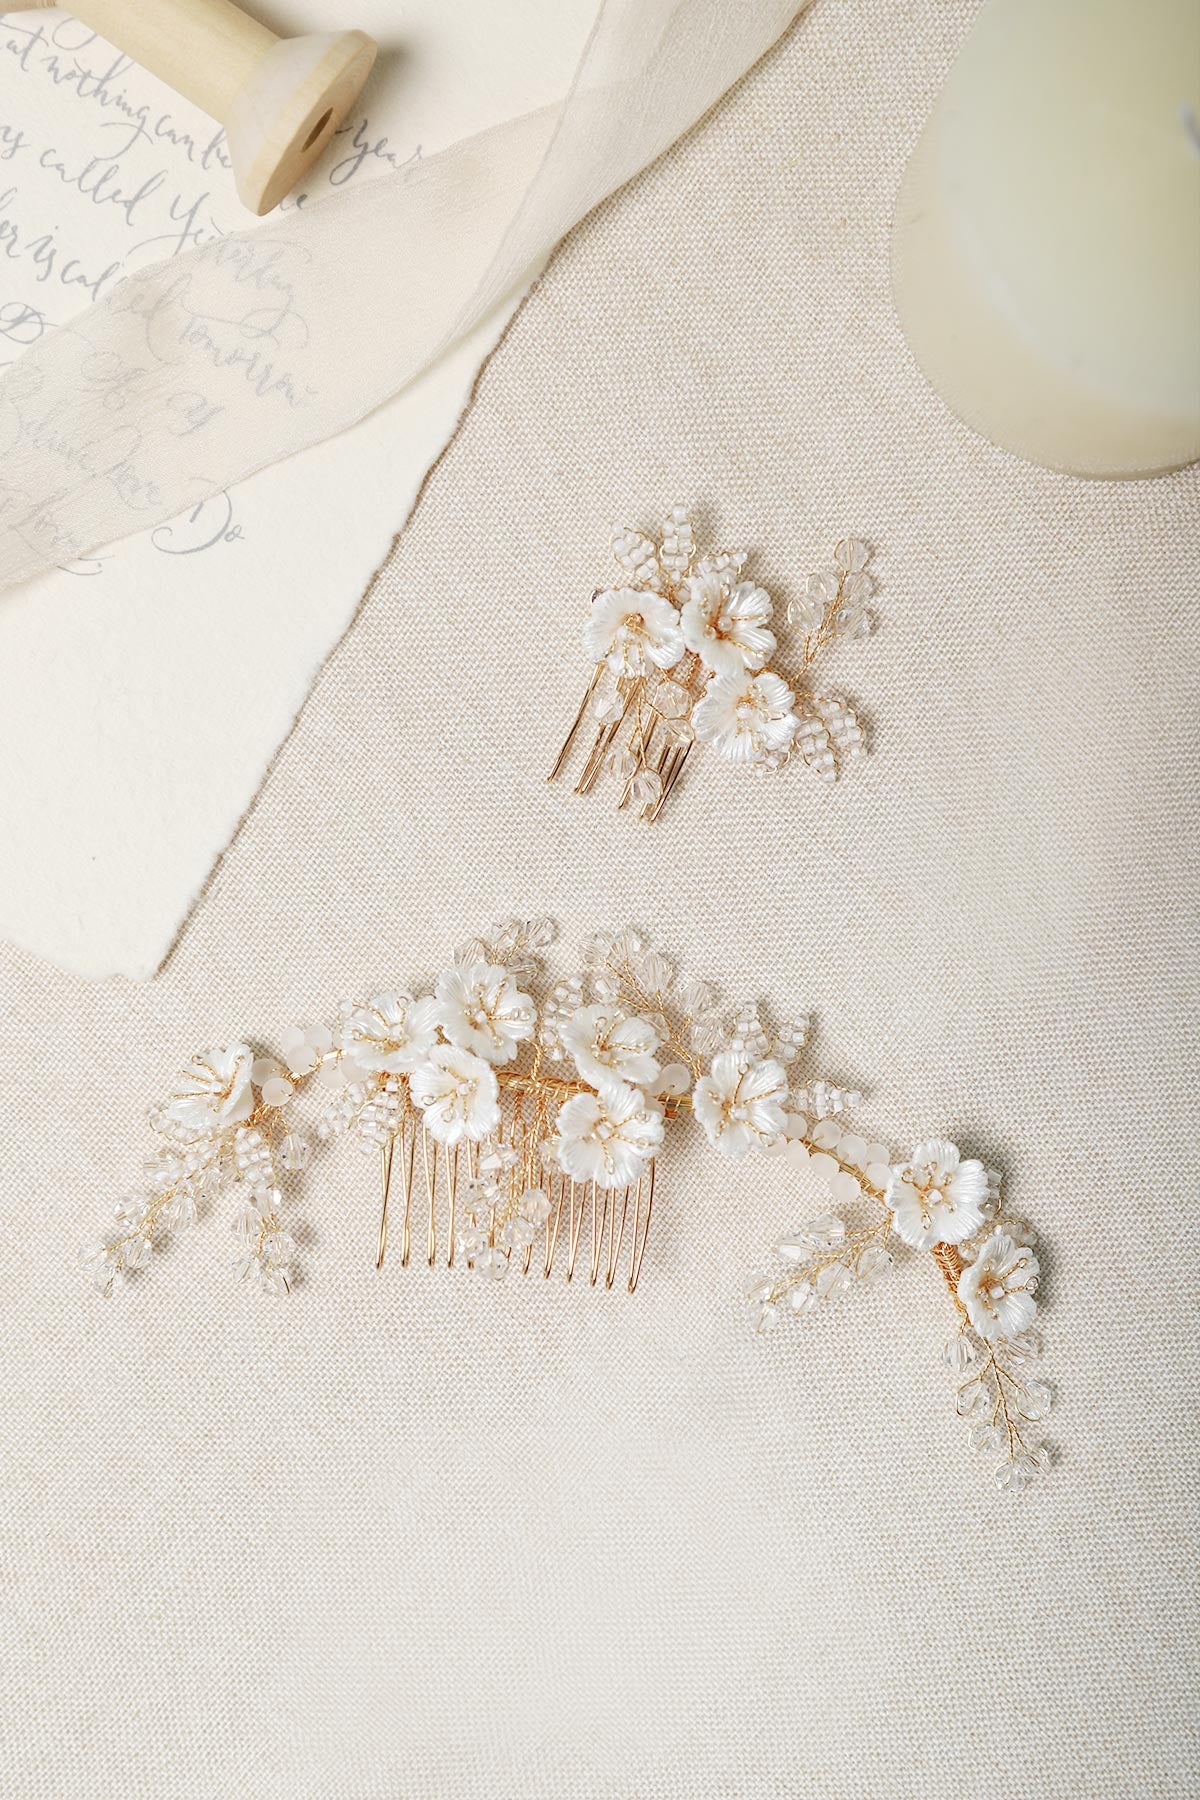 Handmade Bridal Hair Accessories - Hair Side Combs